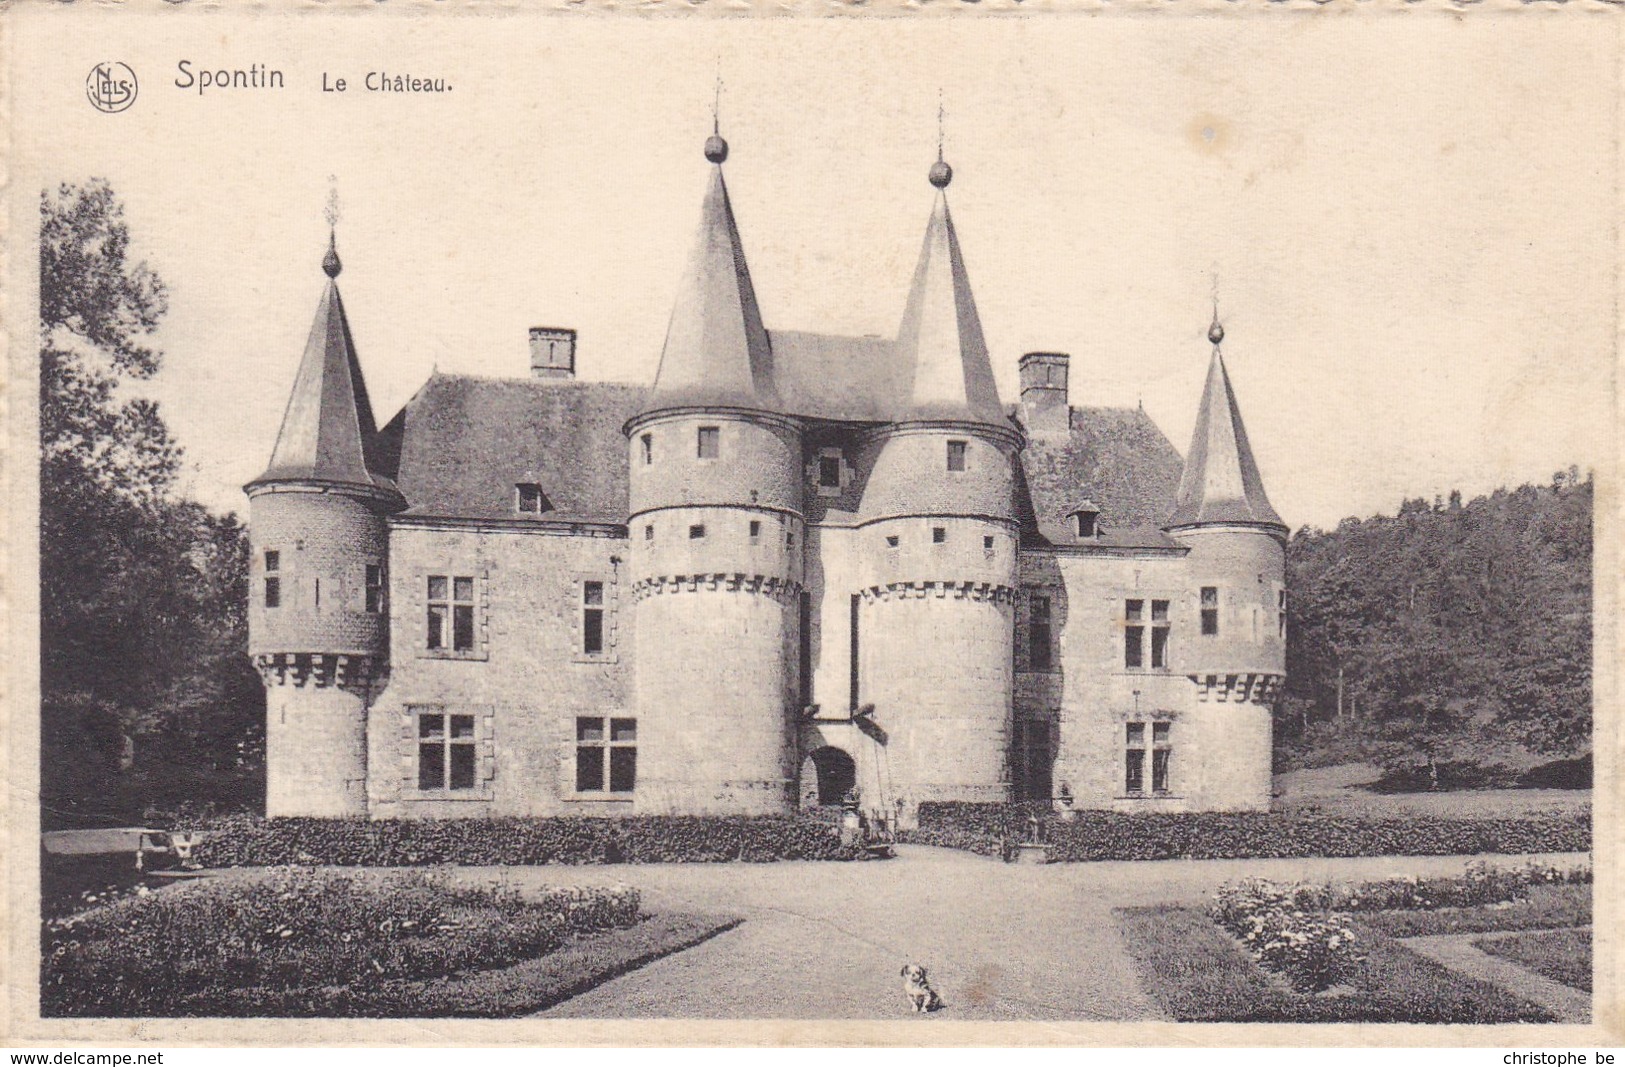 Spontin, Le Château (pk47930) - Yvoir